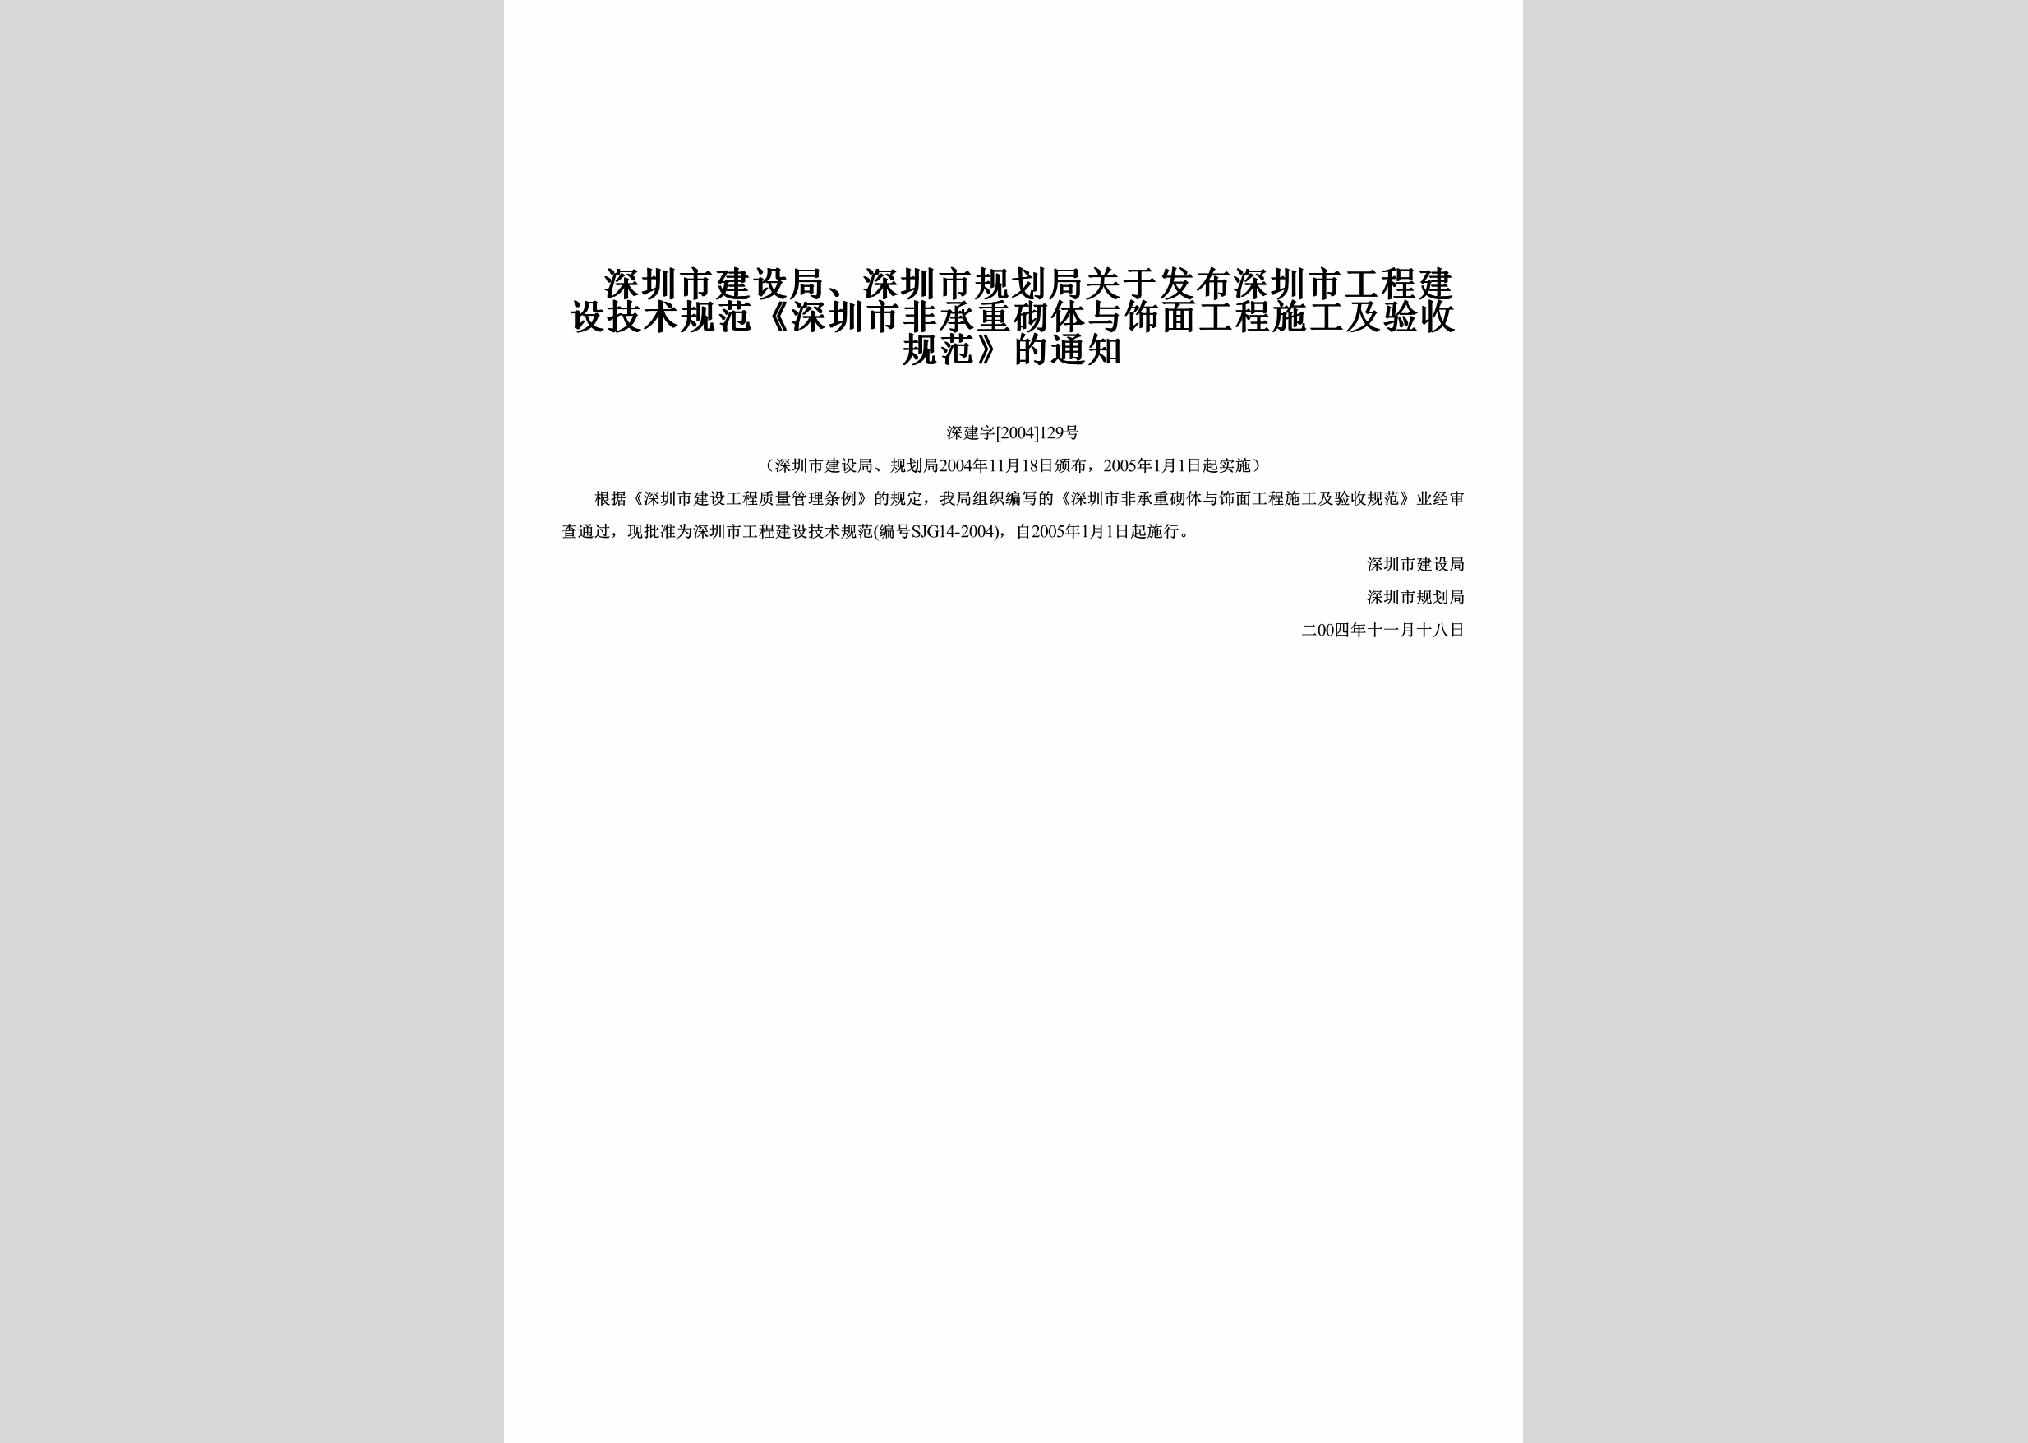 深建字[2004]129号：关于发布深圳市工程建设技术规范《深圳市非承重砌体与饰面工程施工及验收规范》的通知